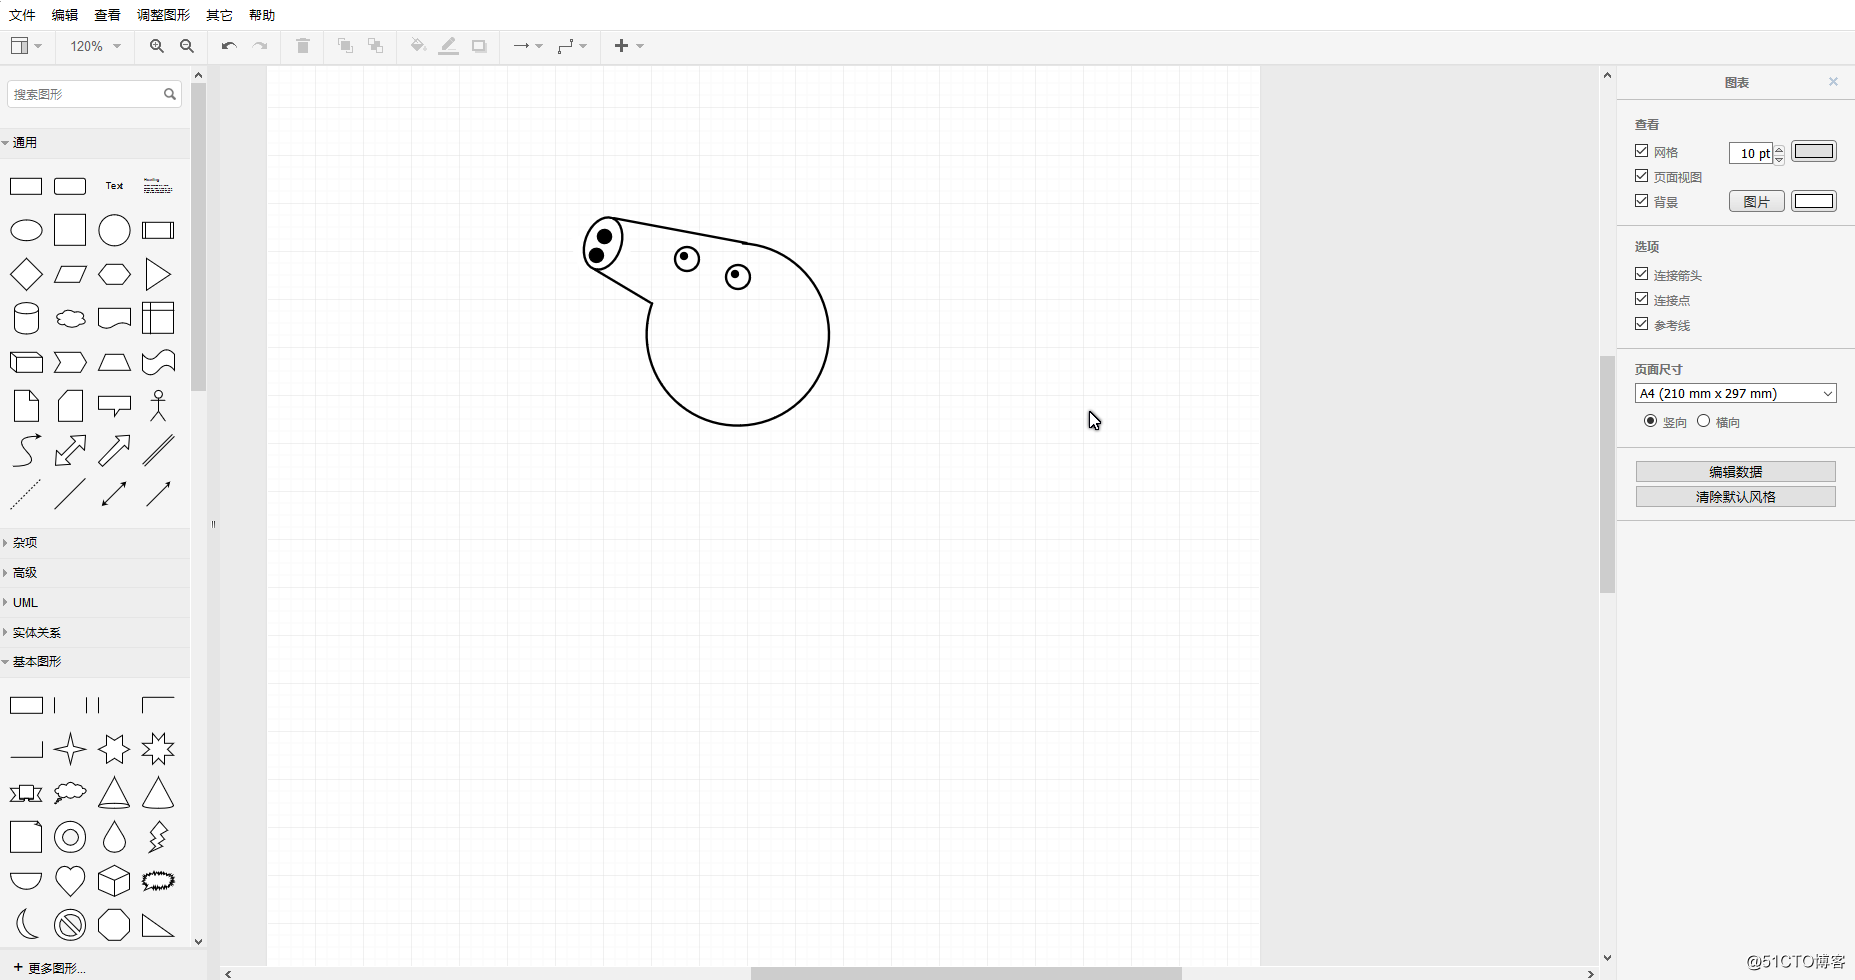 【啥是佩奇】用数字绘在线流程图网站画了一个小猪佩奇